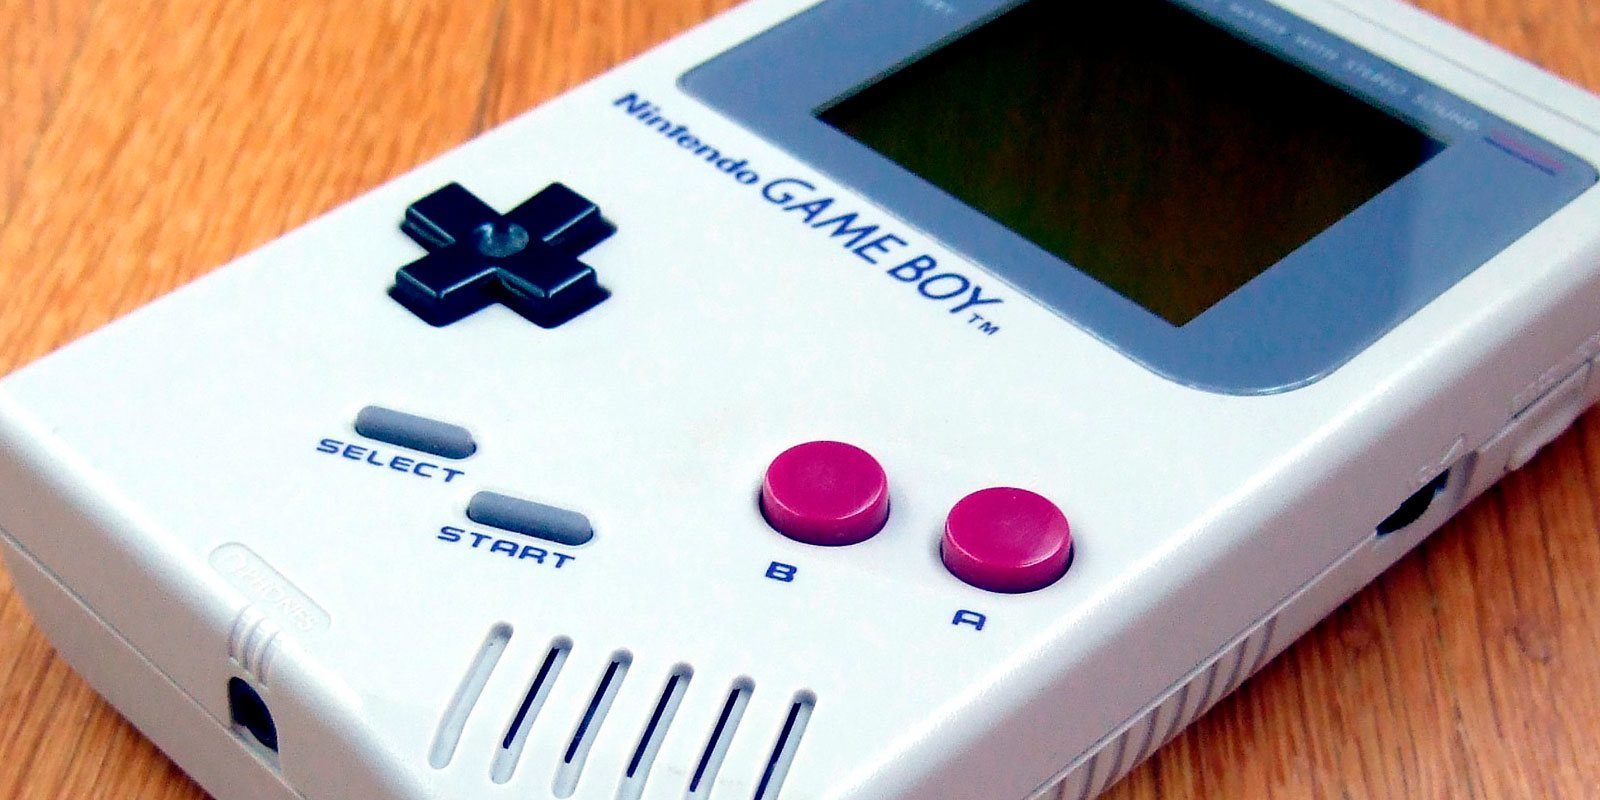 La mítica Game Boy ha cumplido ya 30 años de existencia